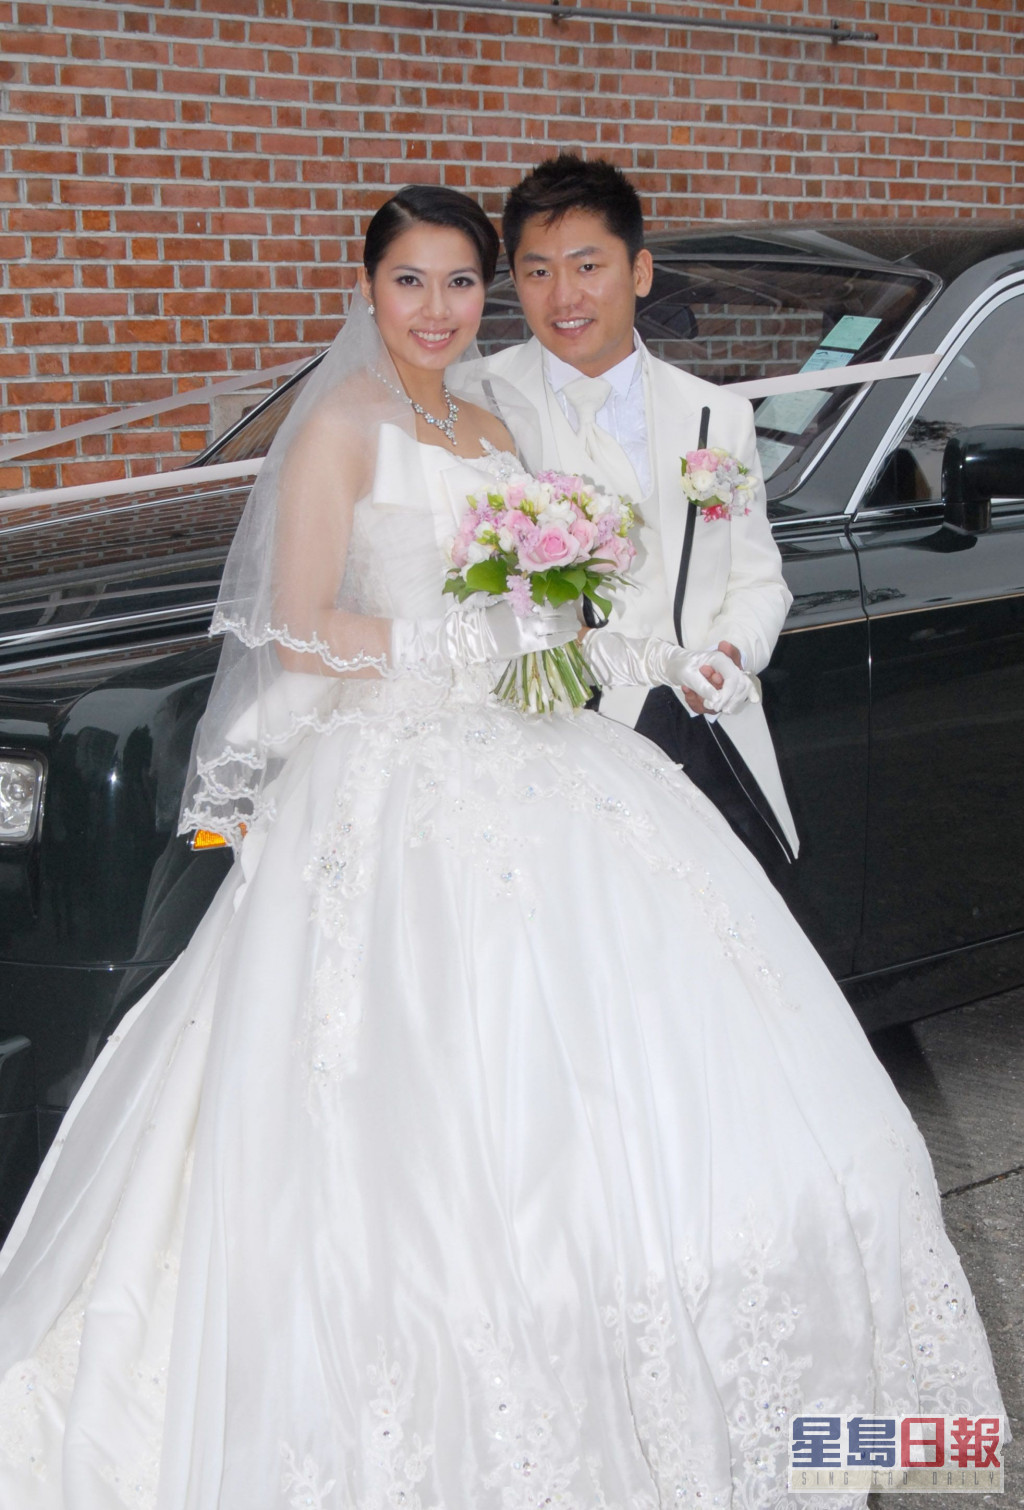 當年可嵐喺歌唱事業發展起步期就奉子成婚，下嫁前夫尤子威。